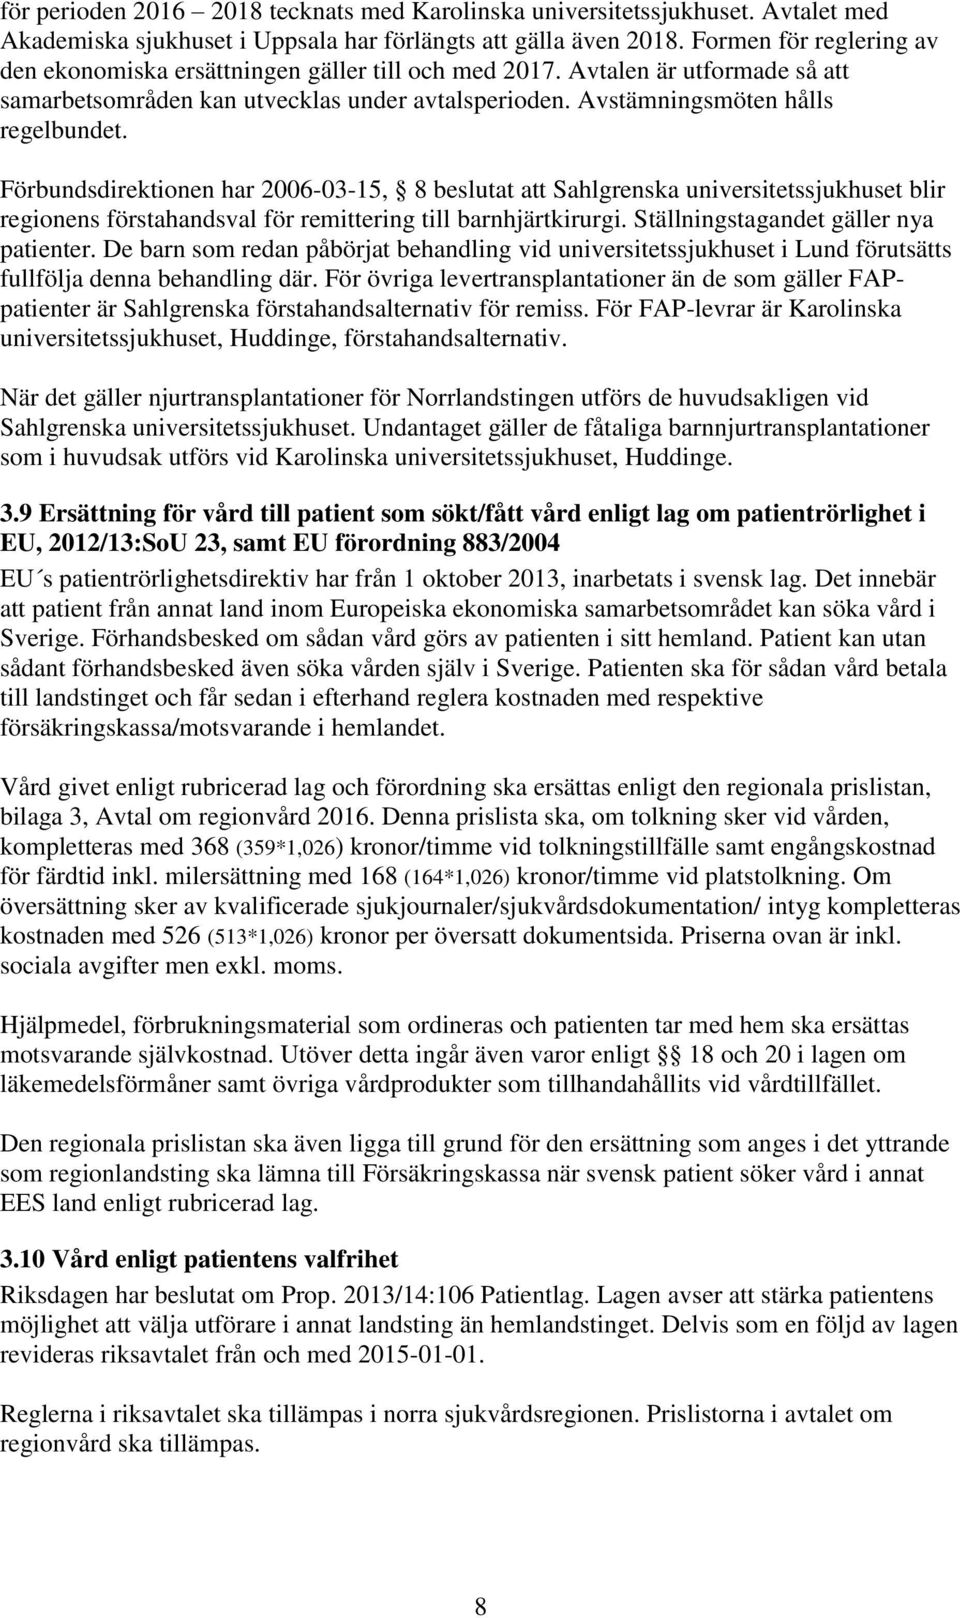 Förbundsdirektionen har 2006-03-15, 8 beslutat att Sahlgrenska universitetssjukhuset blir regionens förstahandsval för remittering till barnhjärtkirurgi. Ställningstagandet gäller nya patienter.